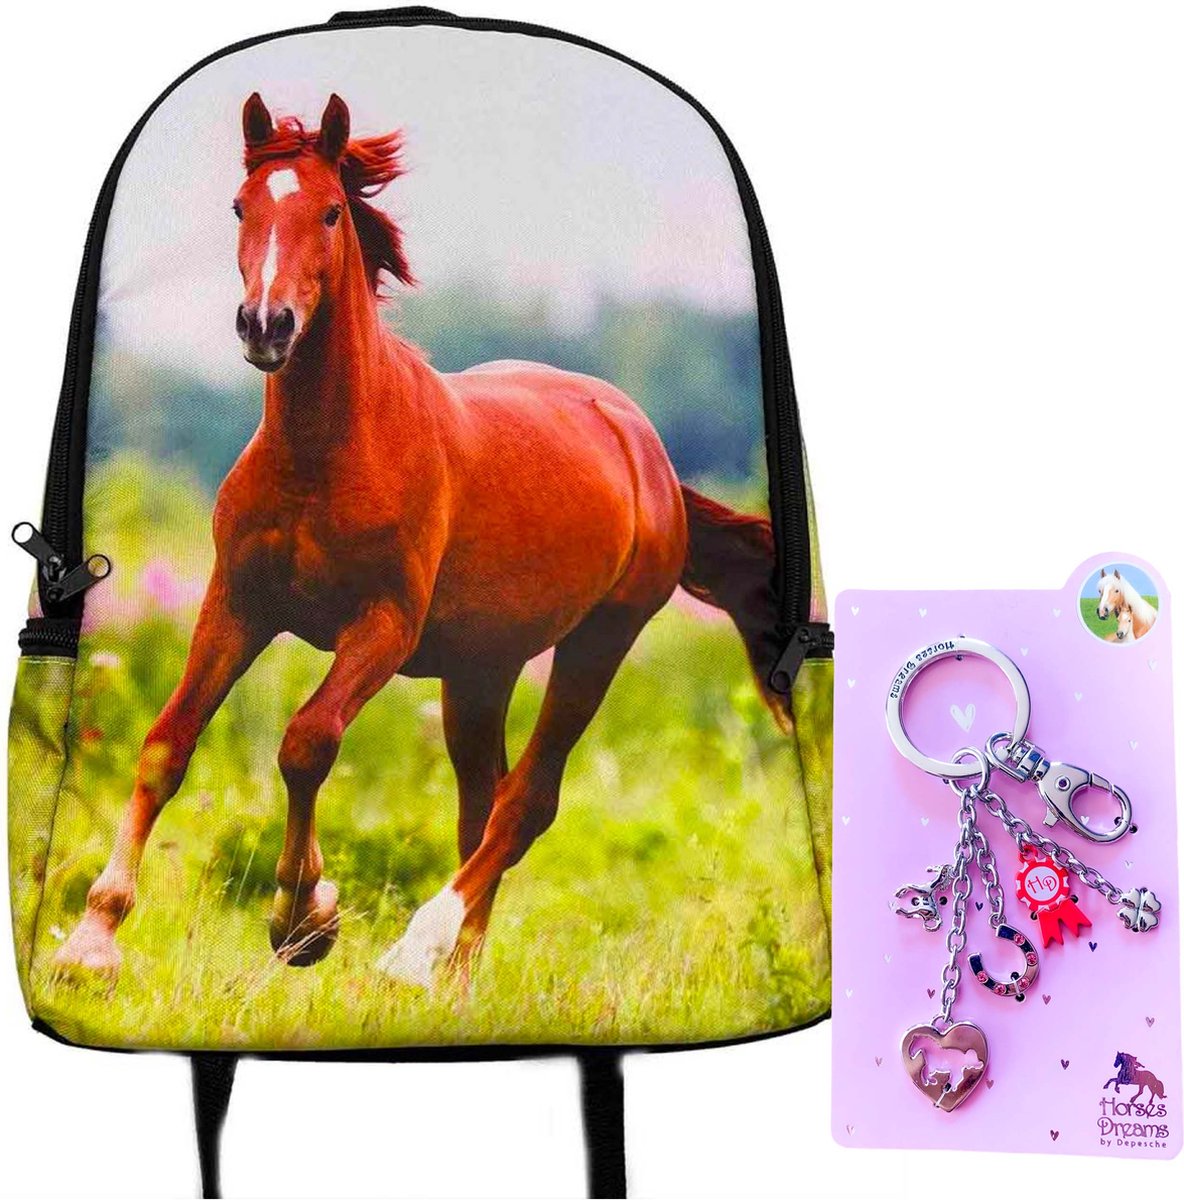 Rugzak Paard- rugtas bruin paard- 42cm x 28cm x 12cm- incl. metalen sleutelhanger set roze 5 delig